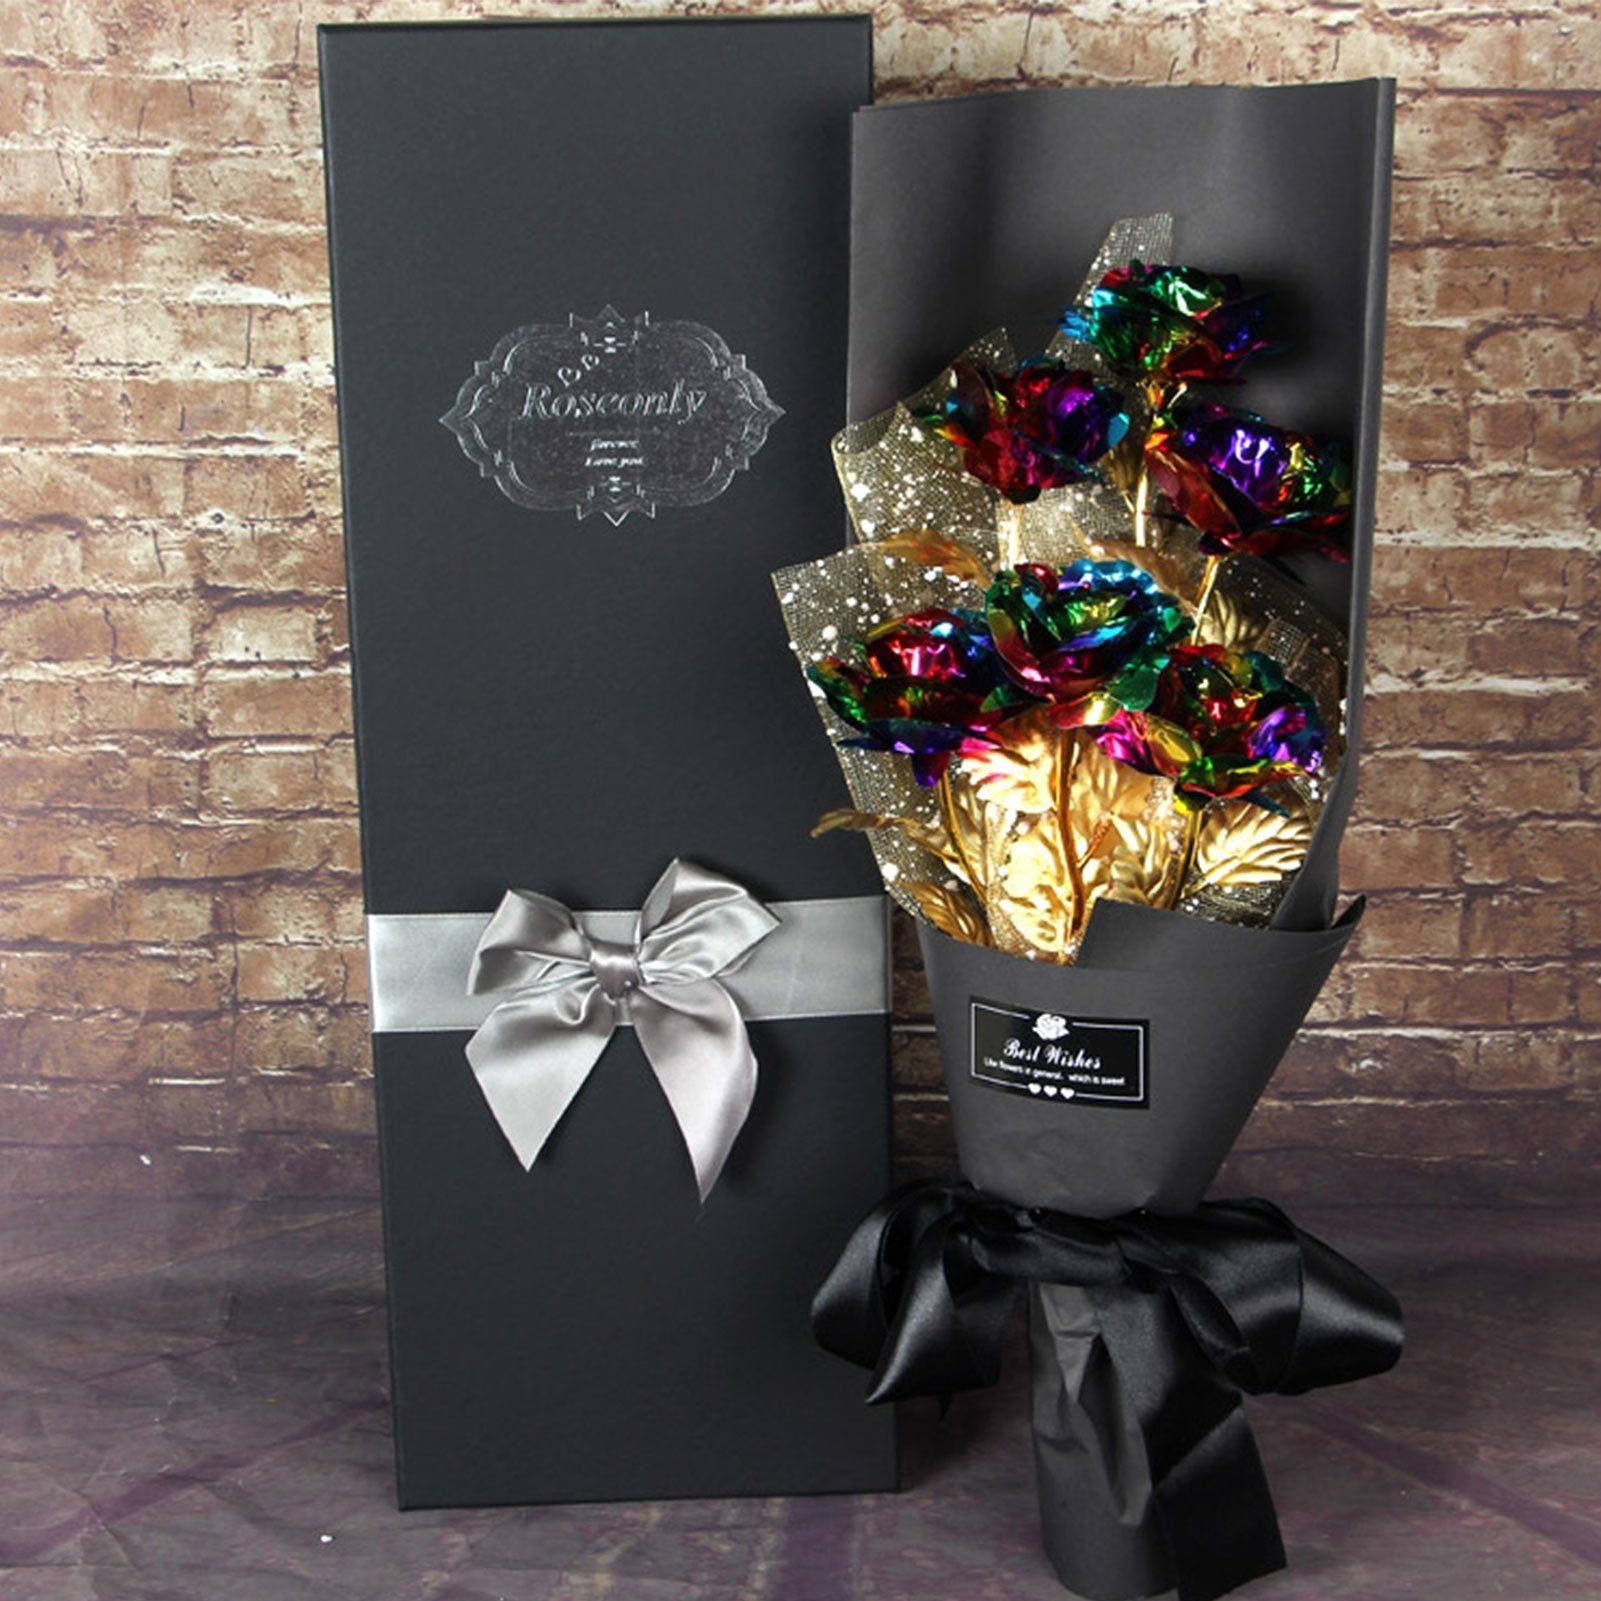 24k Galaxy Foil Rose Bouquet 6 Flower Arrangement (5 Colors) w/Gift Box